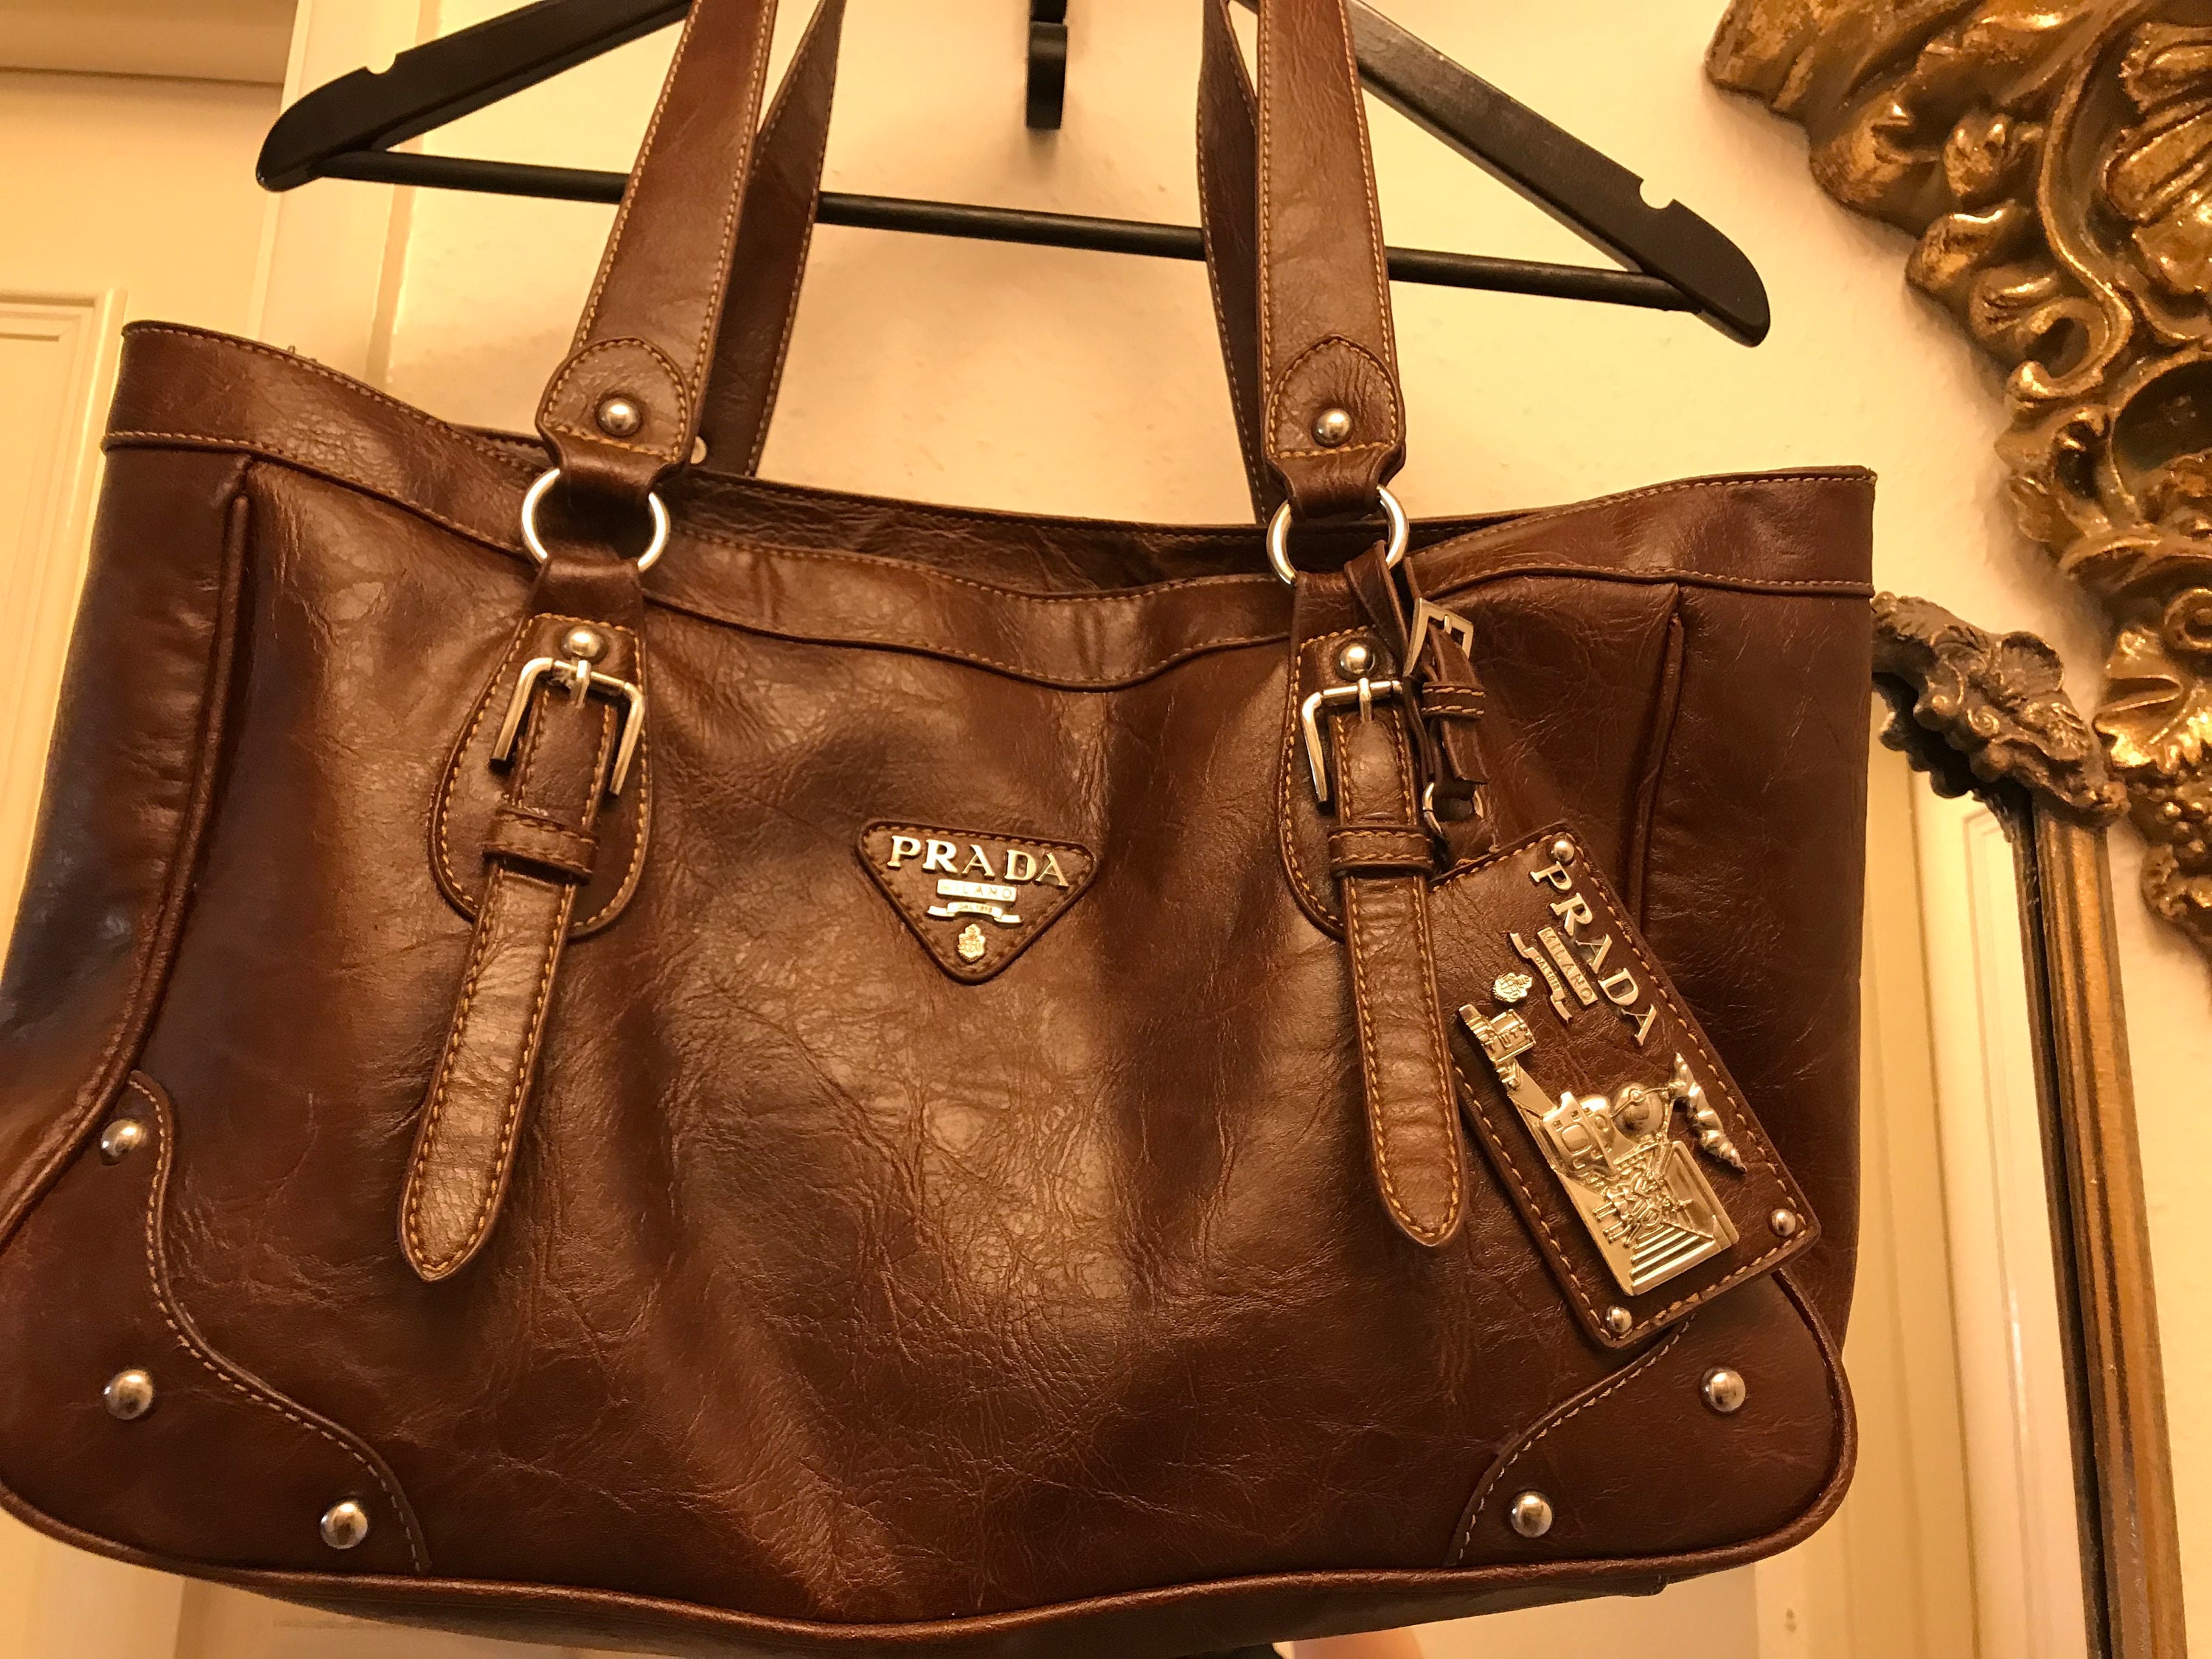 Prada vintage green suede and brown leather shoulder bag for women | eBay